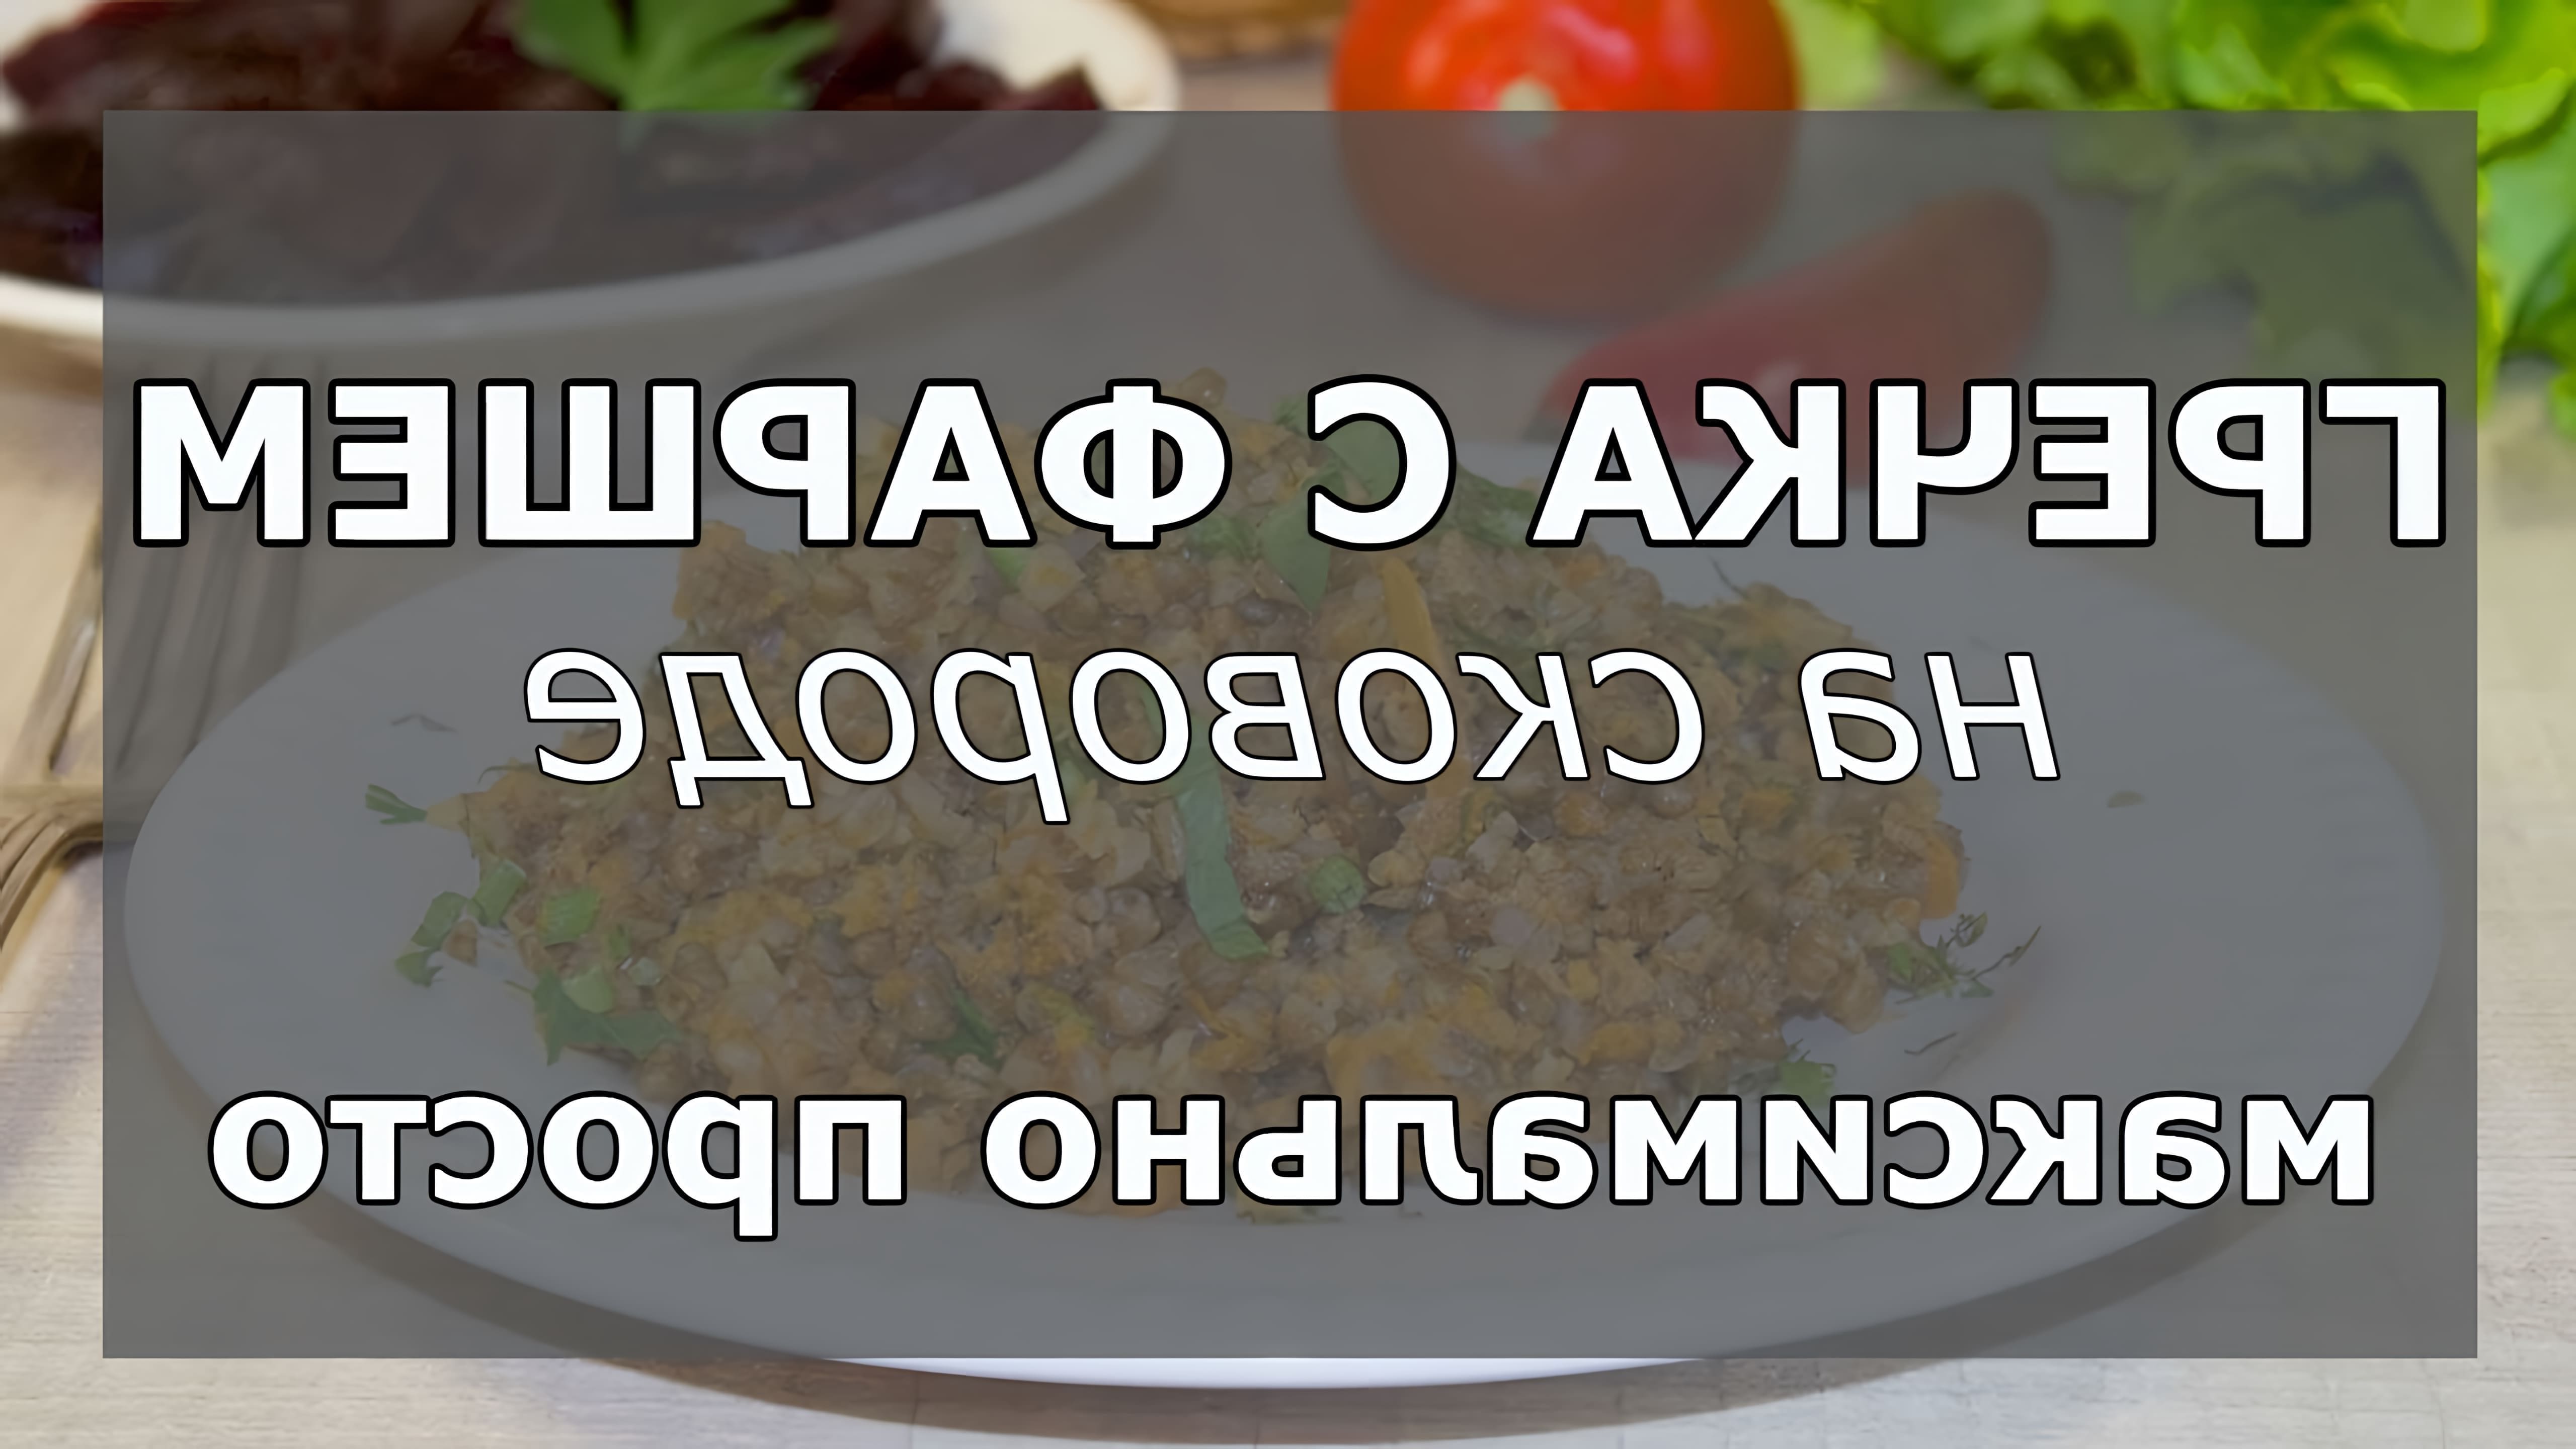 В этом видео демонстрируется рецепт приготовления гречки с фаршем на сковороде